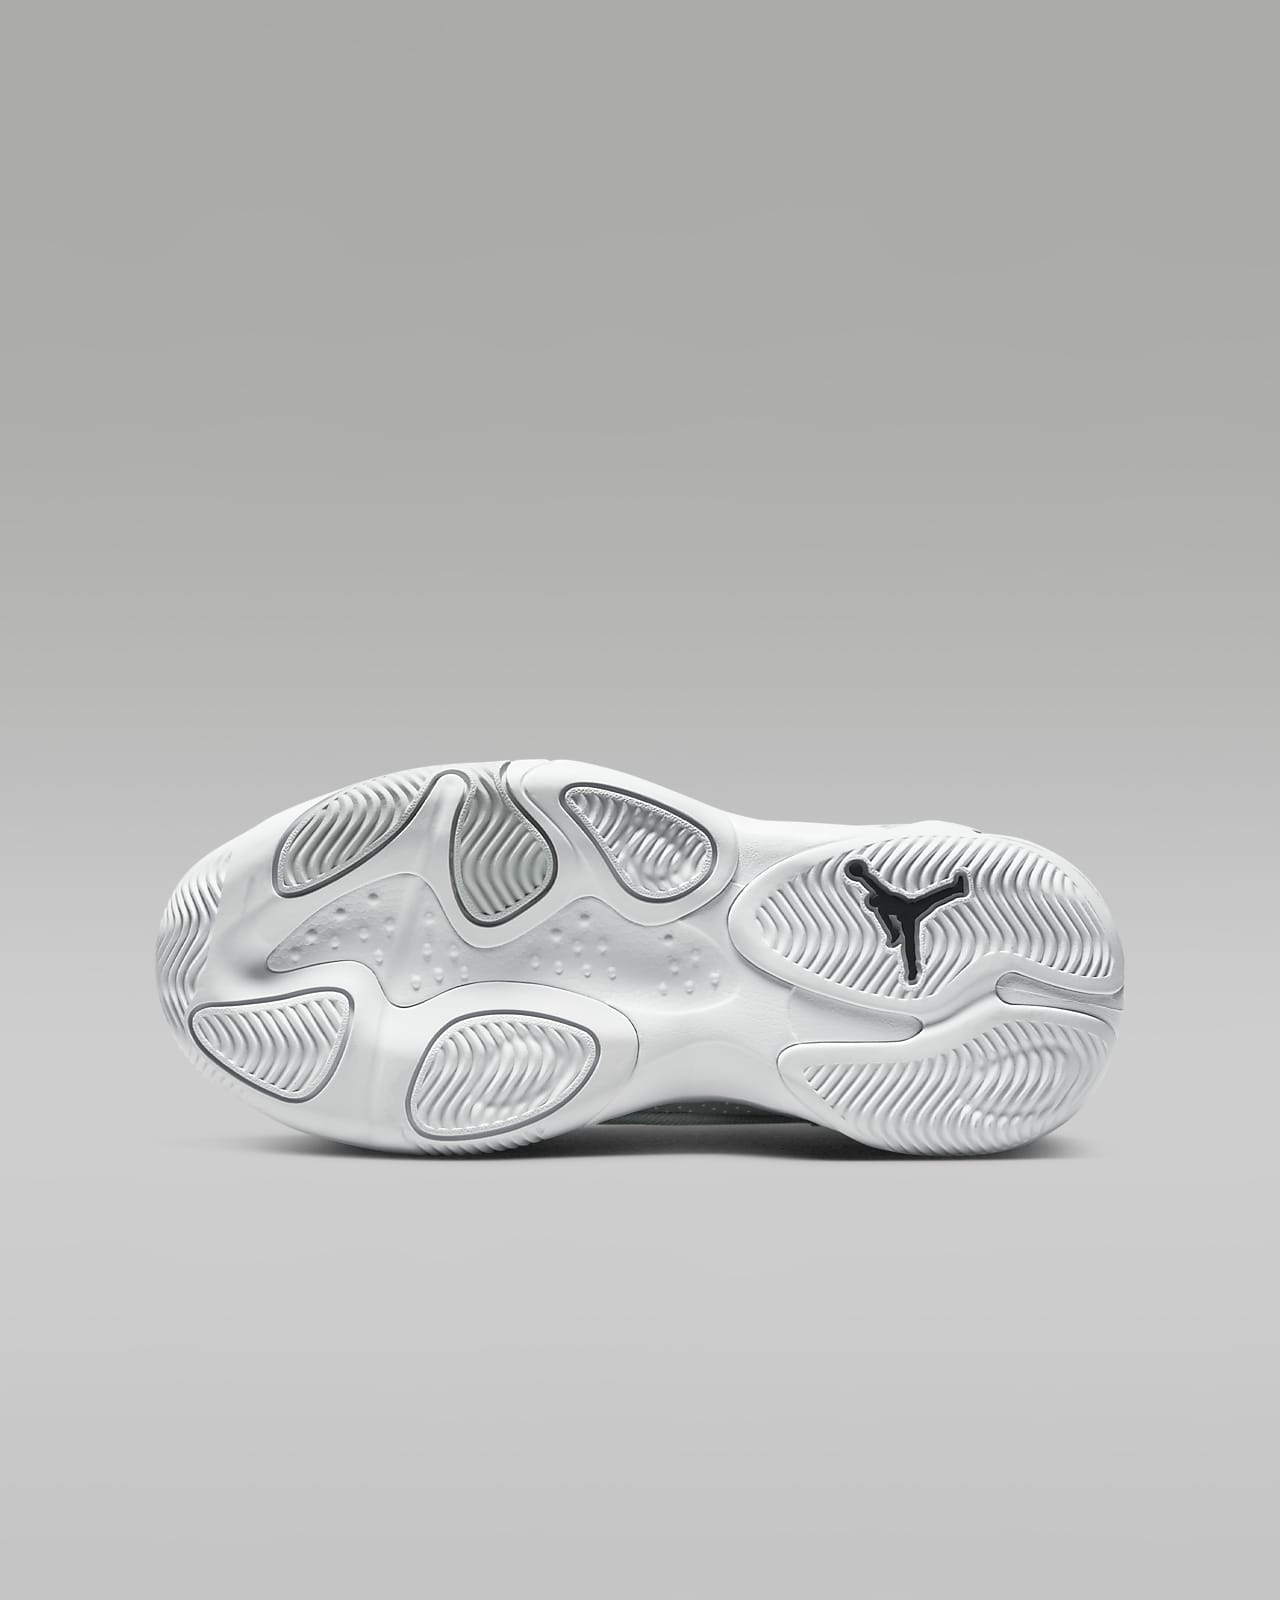 Air Jordan 13 Retro Shoe. Nike LU